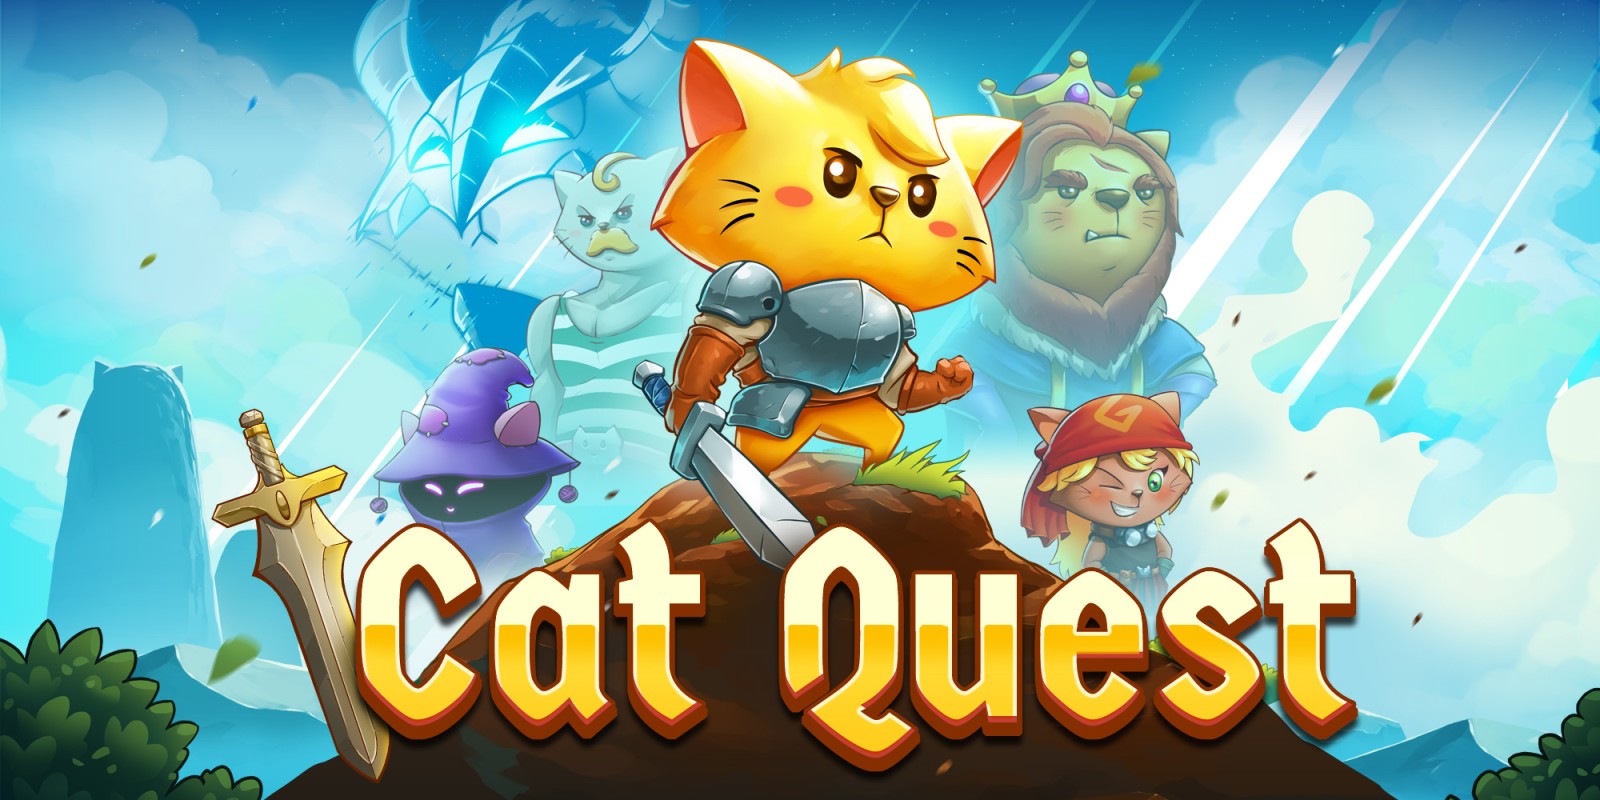 Résultat de recherche d'images pour "cat quest"